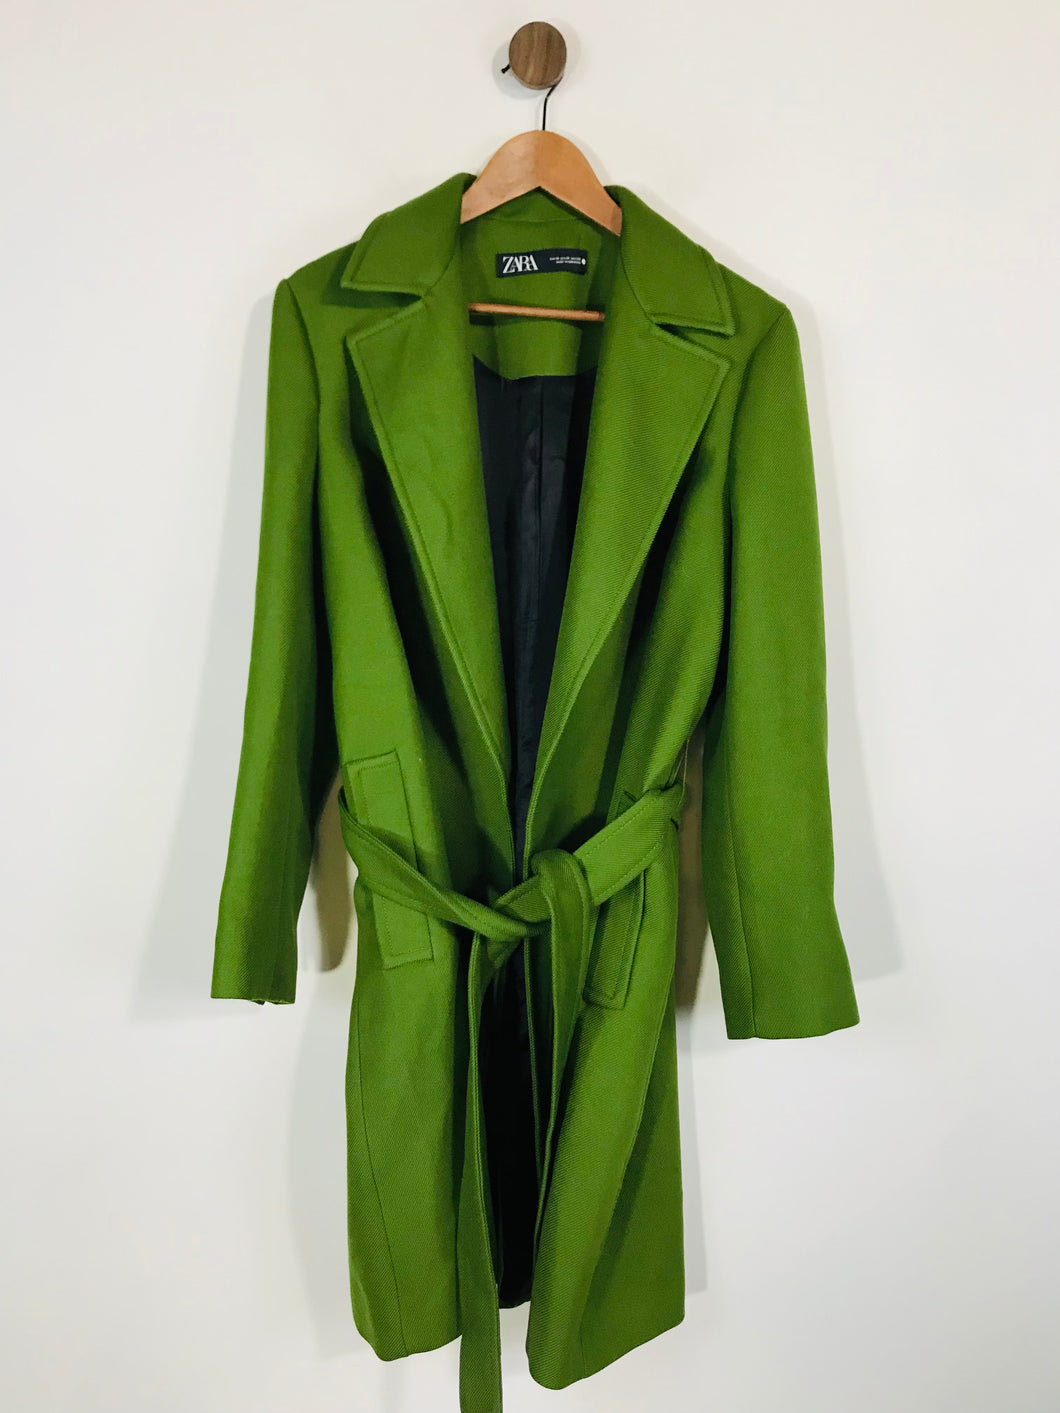 Zara Women's Peacoat Coat | M UK10-12 | Green